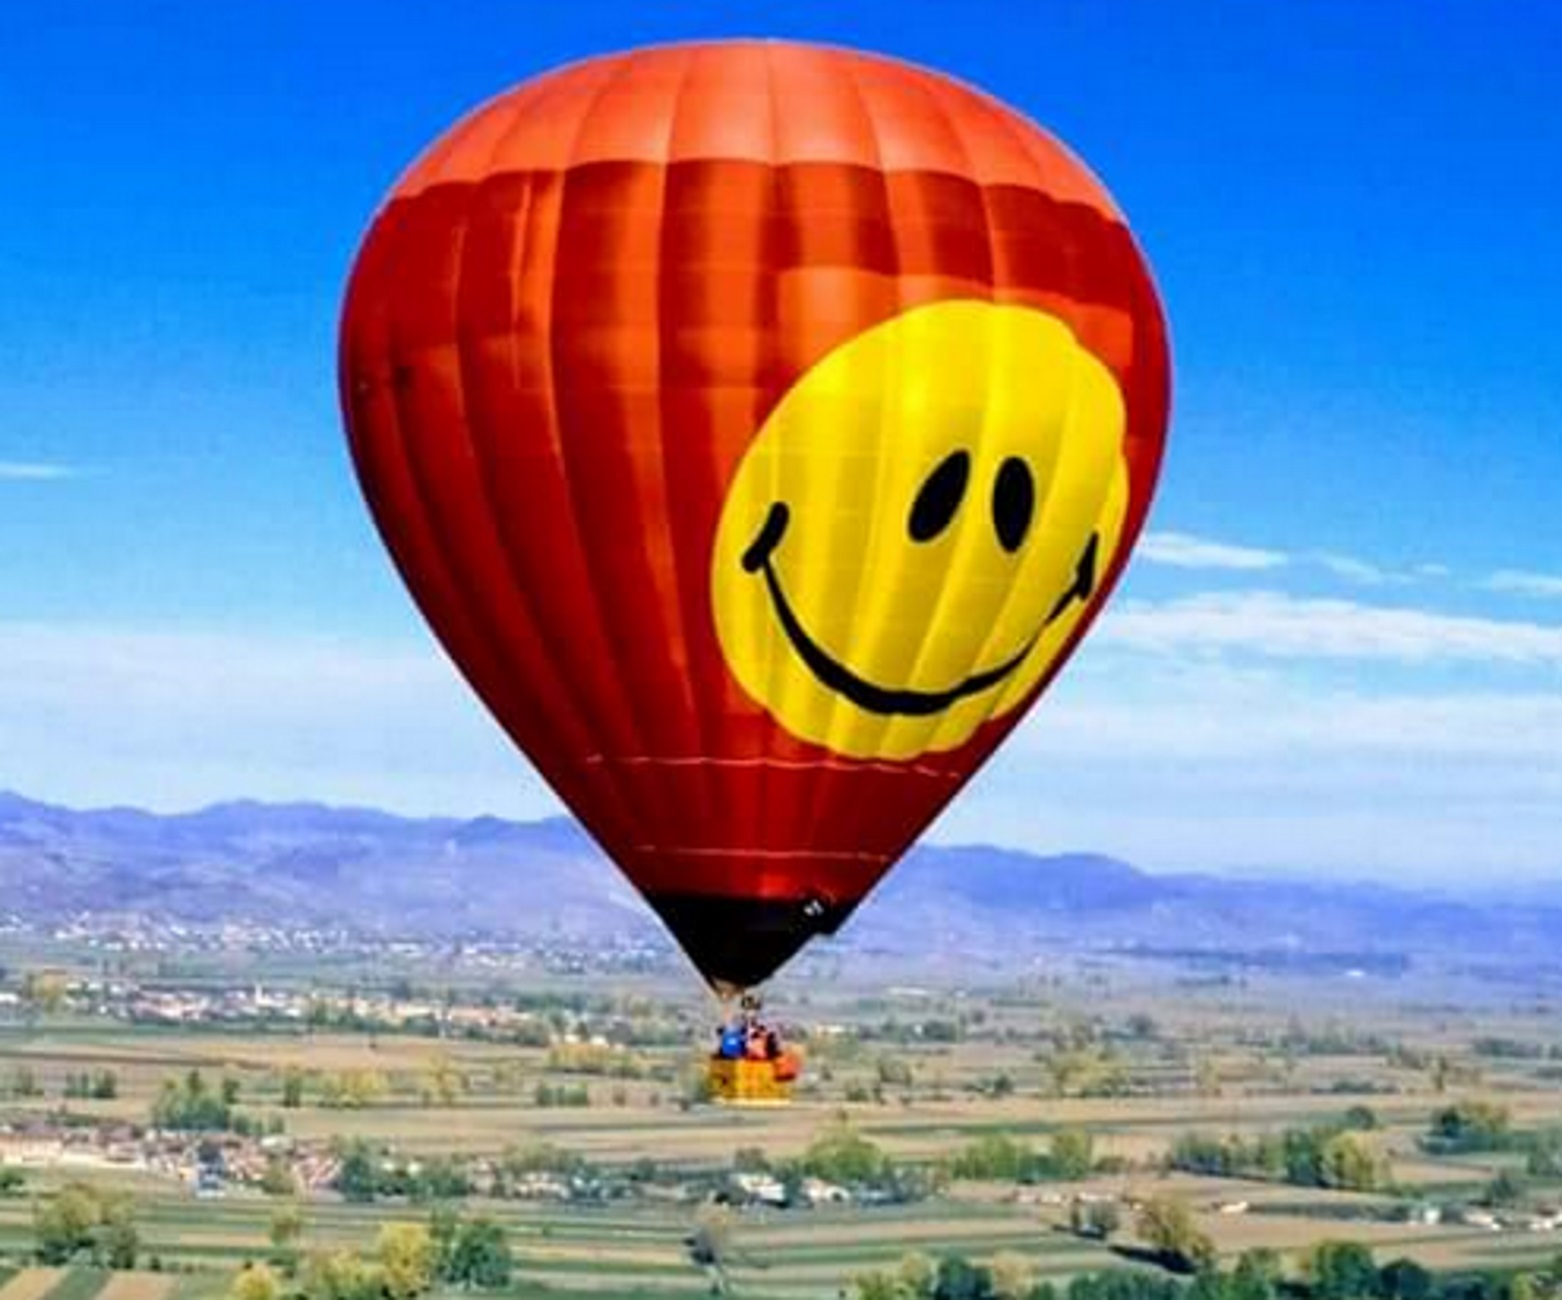 Θεσσαλονίκη: Αδρεναλίνη που χτυπάει κόκκινο μέσα σε αυτό το αερόστατο – «Ταξίδια μαγικά»